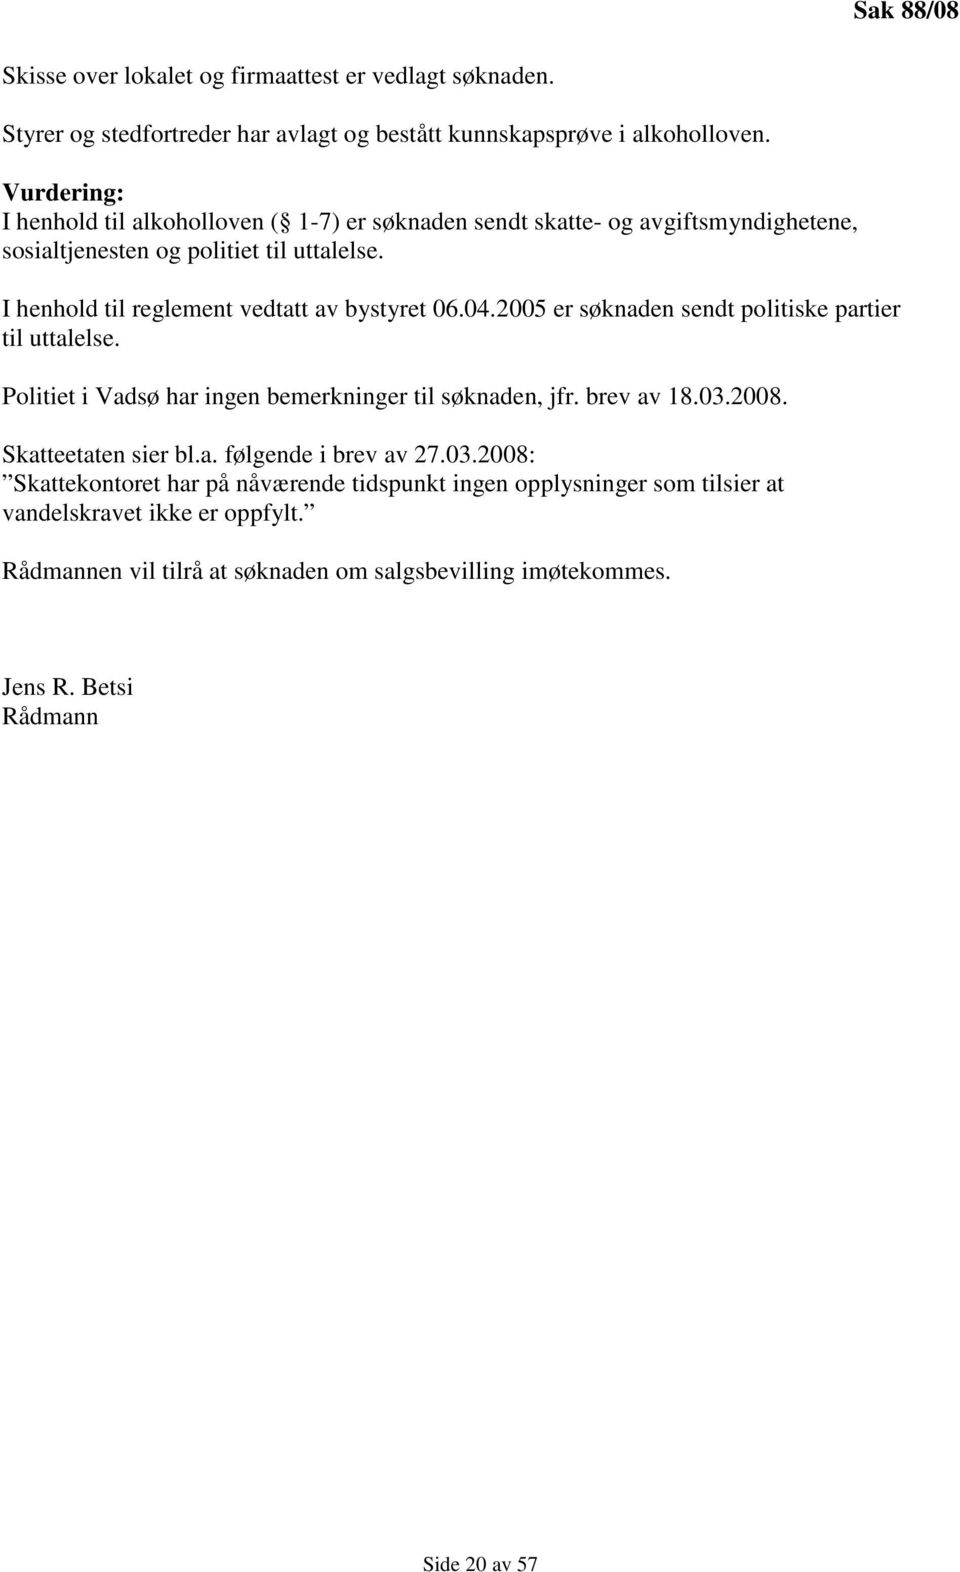 I henhold til reglement vedtatt av bystyret 06.04.2005 er søknaden sendt politiske partier til uttalelse. Politiet i Vadsø har ingen bemerkninger til søknaden, jfr. brev av 18.03.